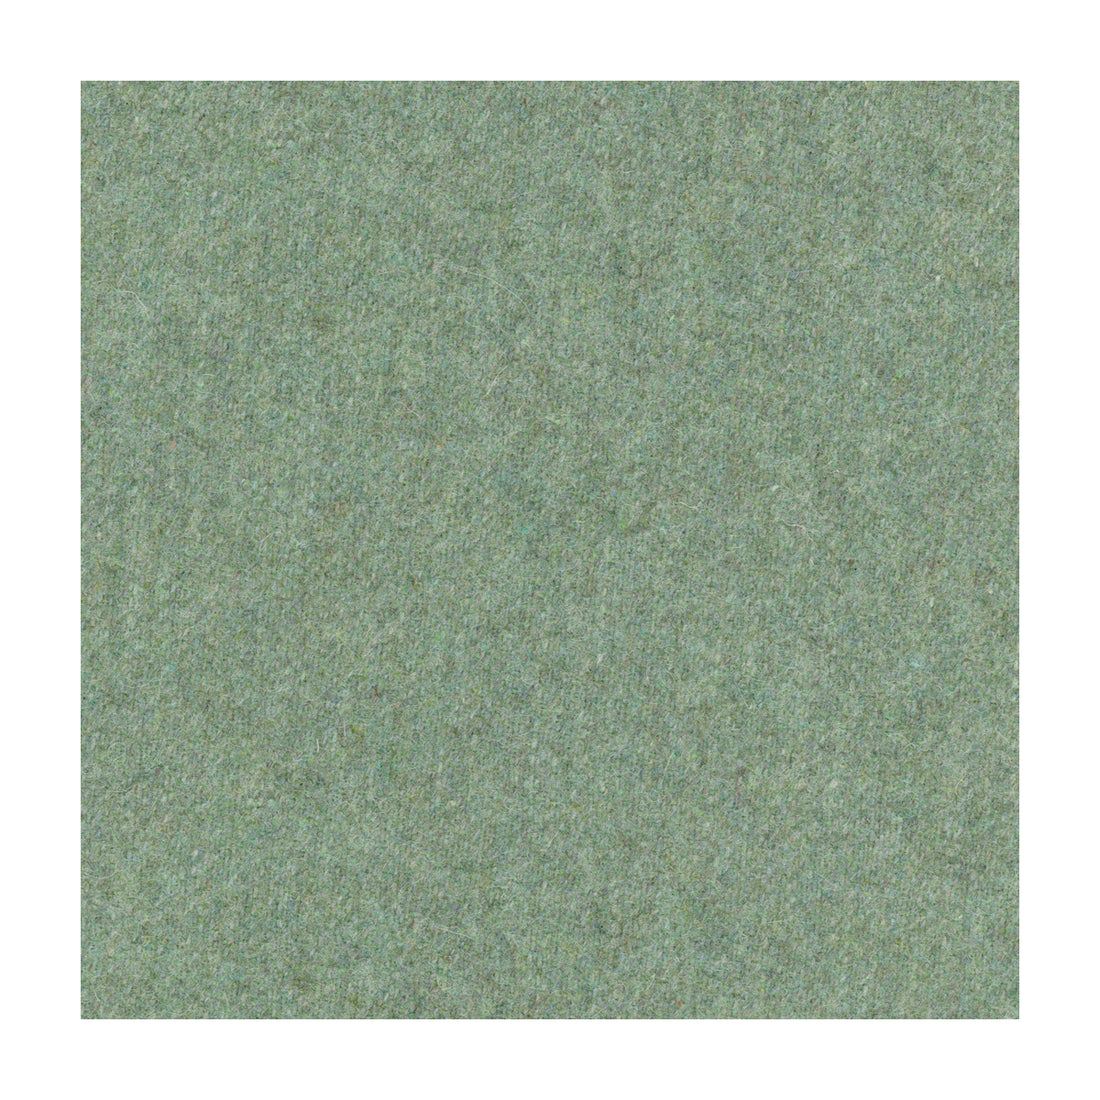 Skye Wool fabric in mint color - pattern 2017118.303.0 - by Lee Jofa